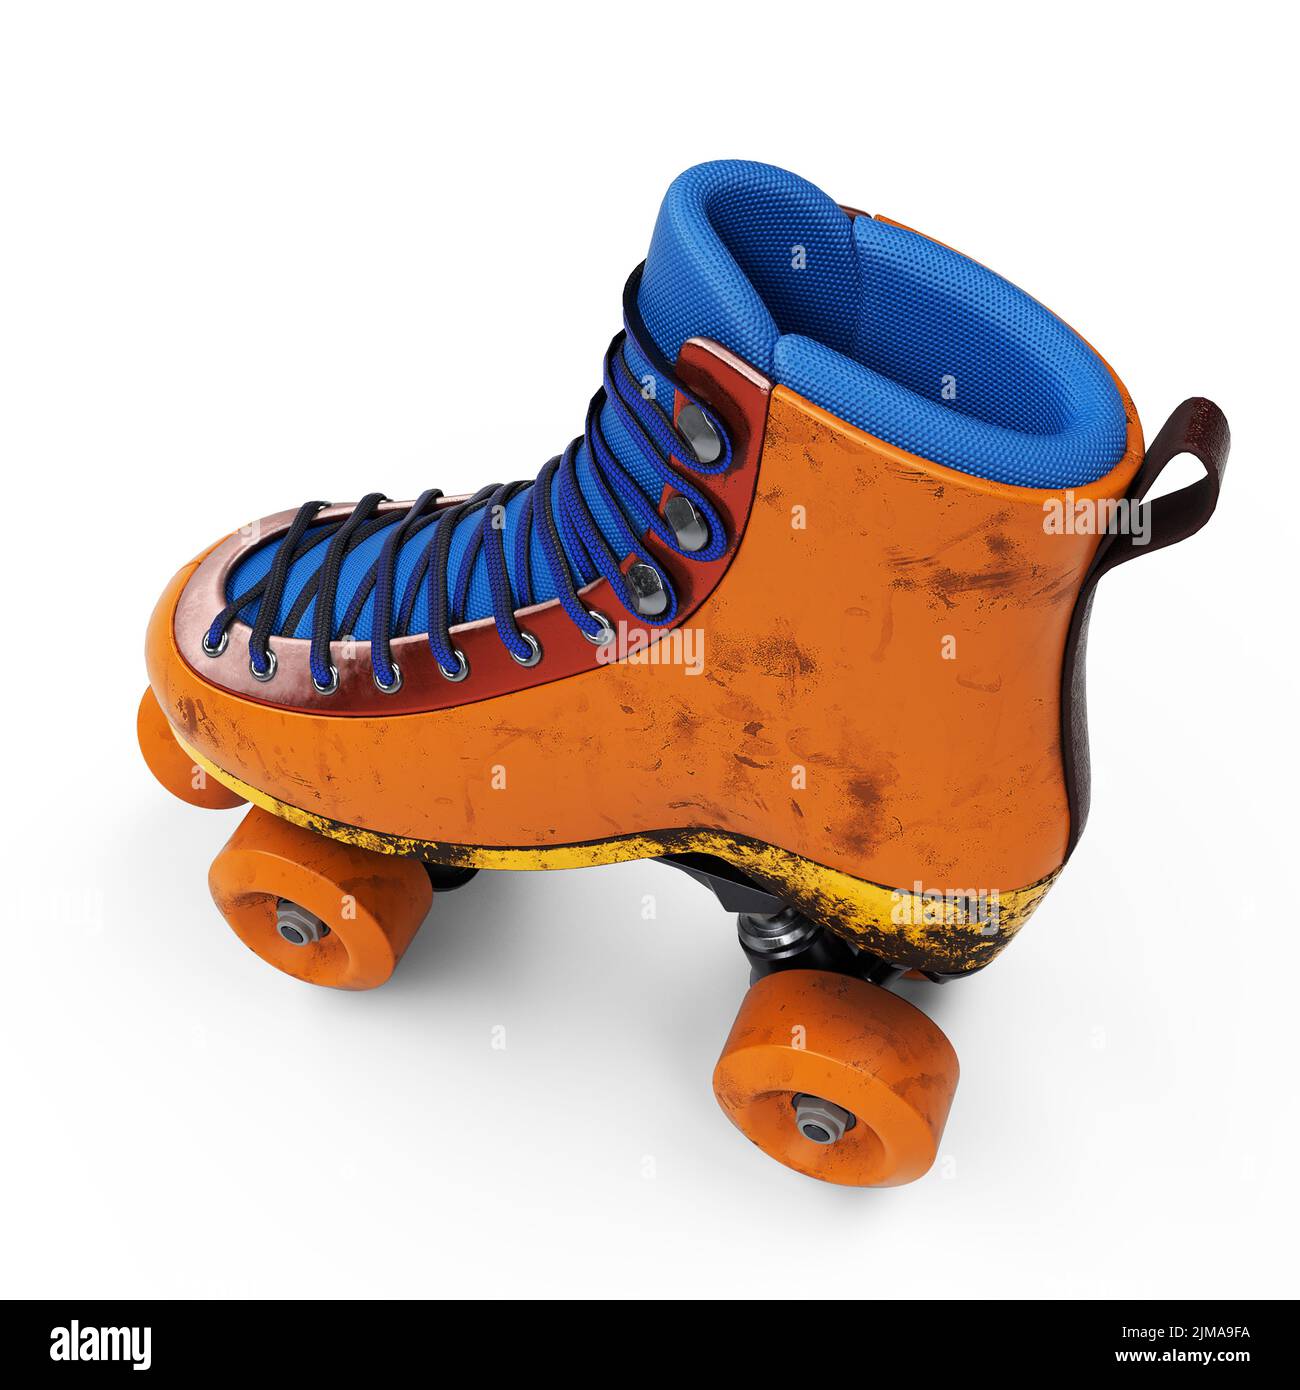 Roller, paire de patin à roulettes des années 80' ⋆